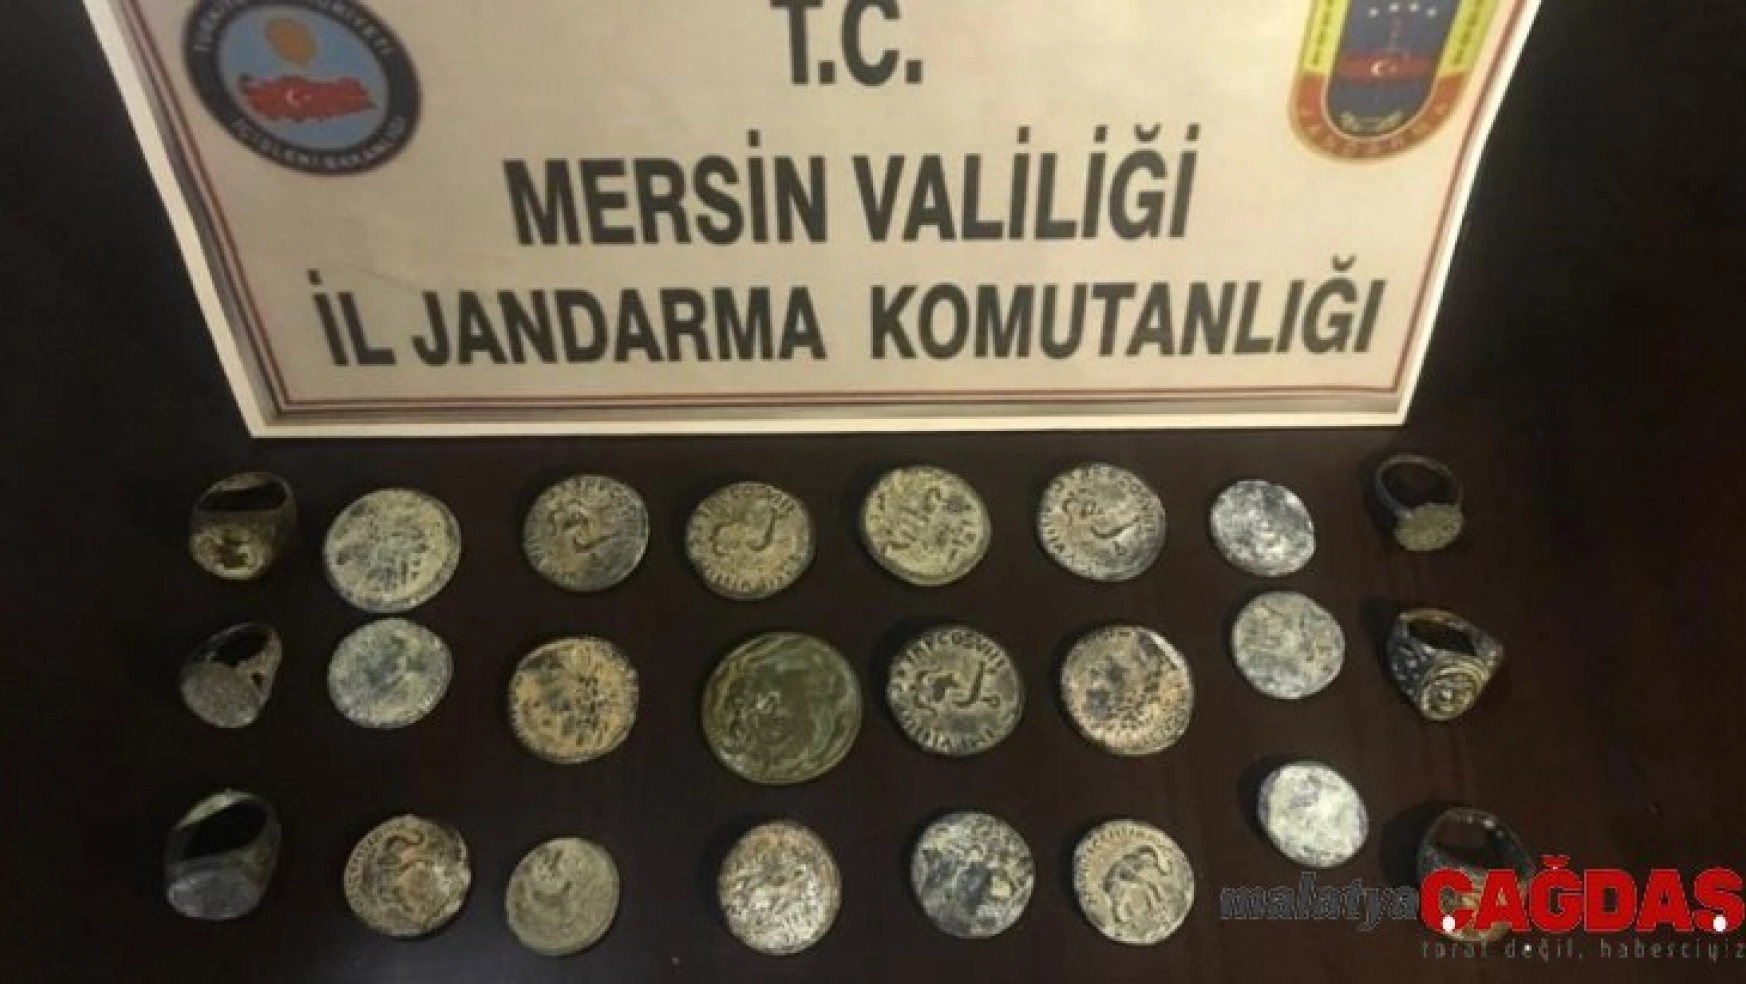 Mersin'de tarihi eserleri satmaya çalışan bir kişi suçüstü yakalandı